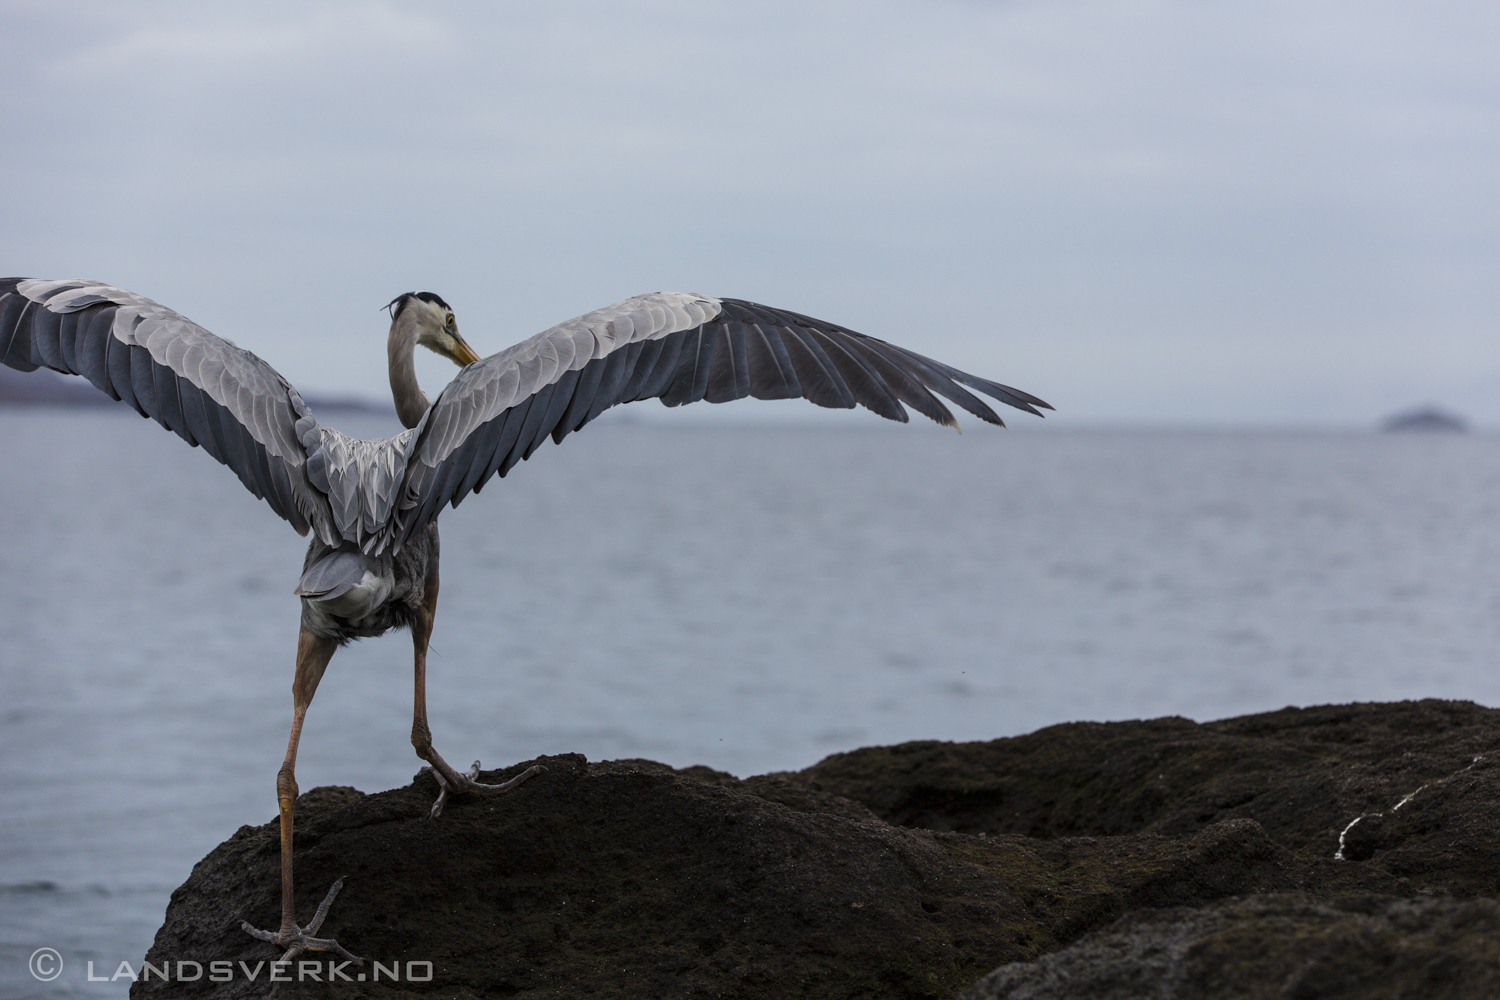 Wild Great Blue Heron, Bartolome Island, Galapagos. 

(Canon EOS 5D Mark III / Canon EF 70-200mm f/2.8 L IS II USM)